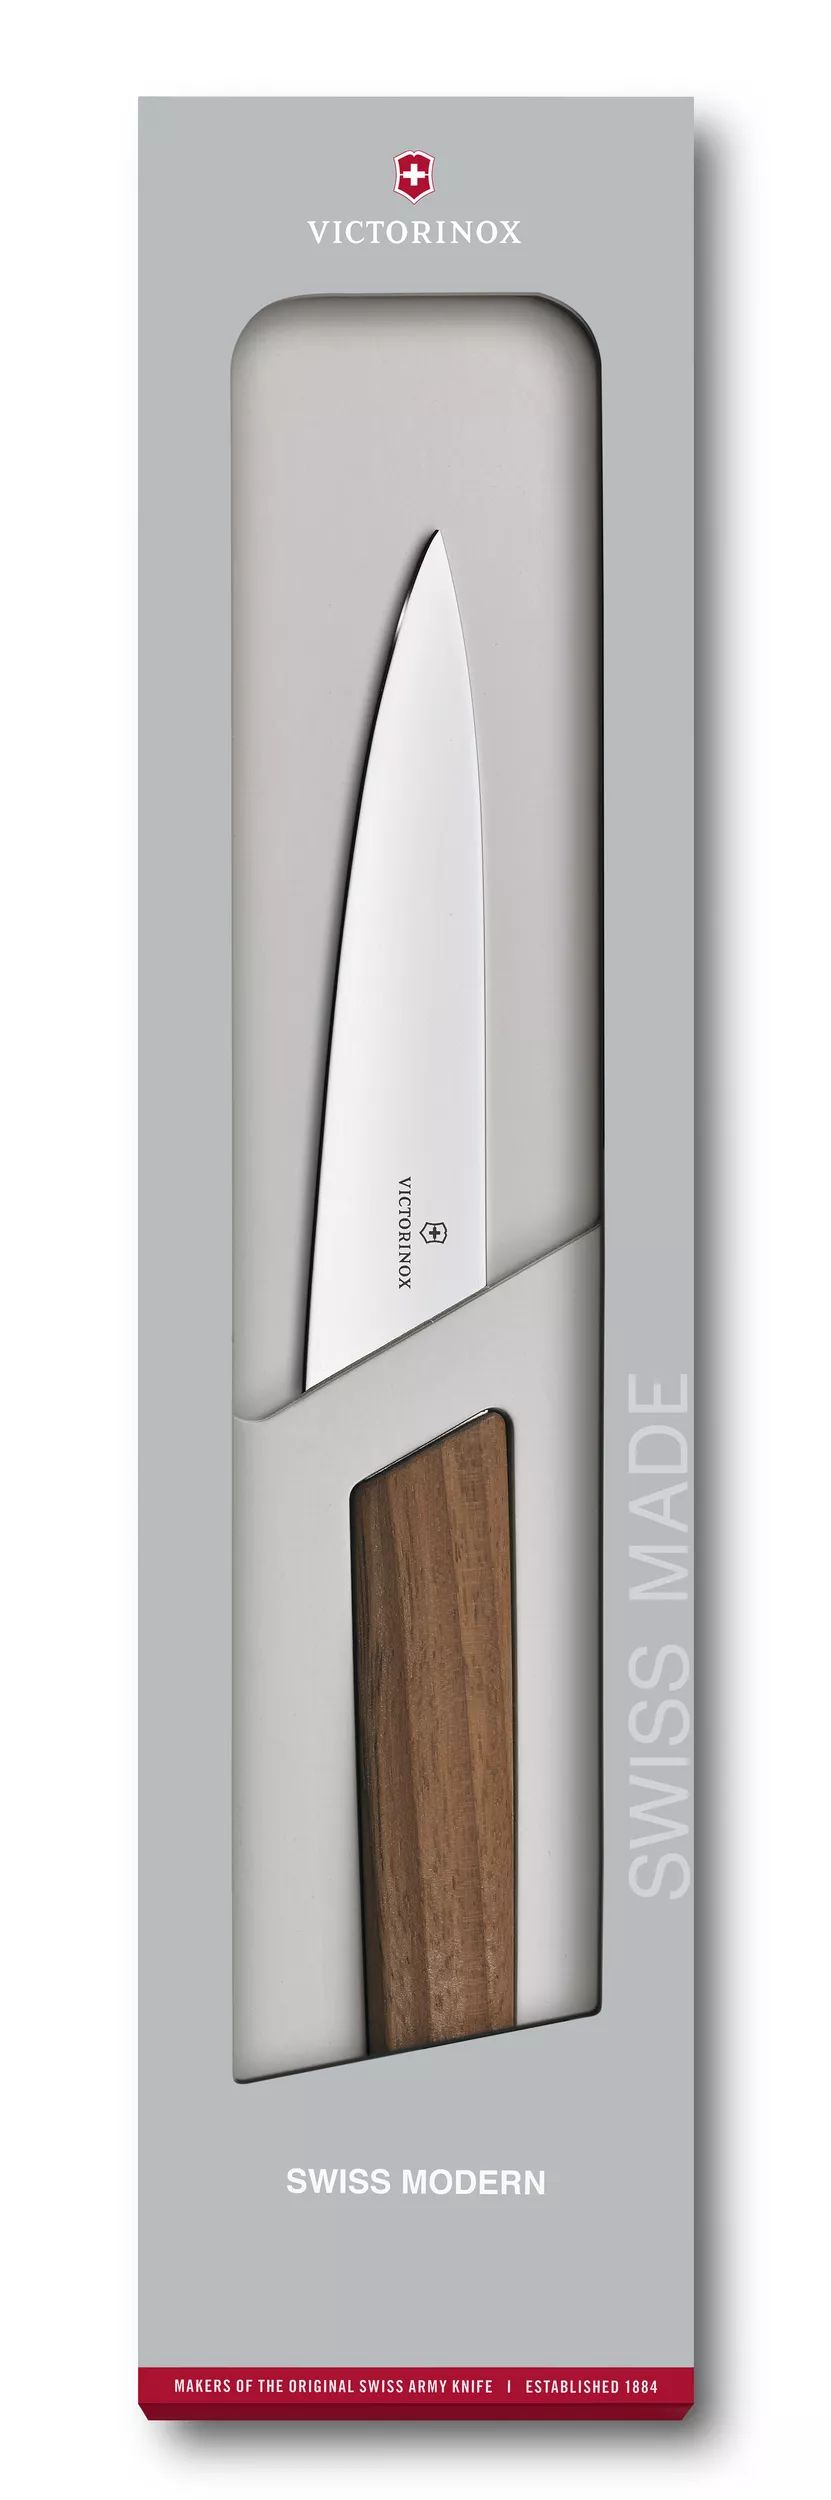 Swiss Modern Office Knife - 6.9010.15G